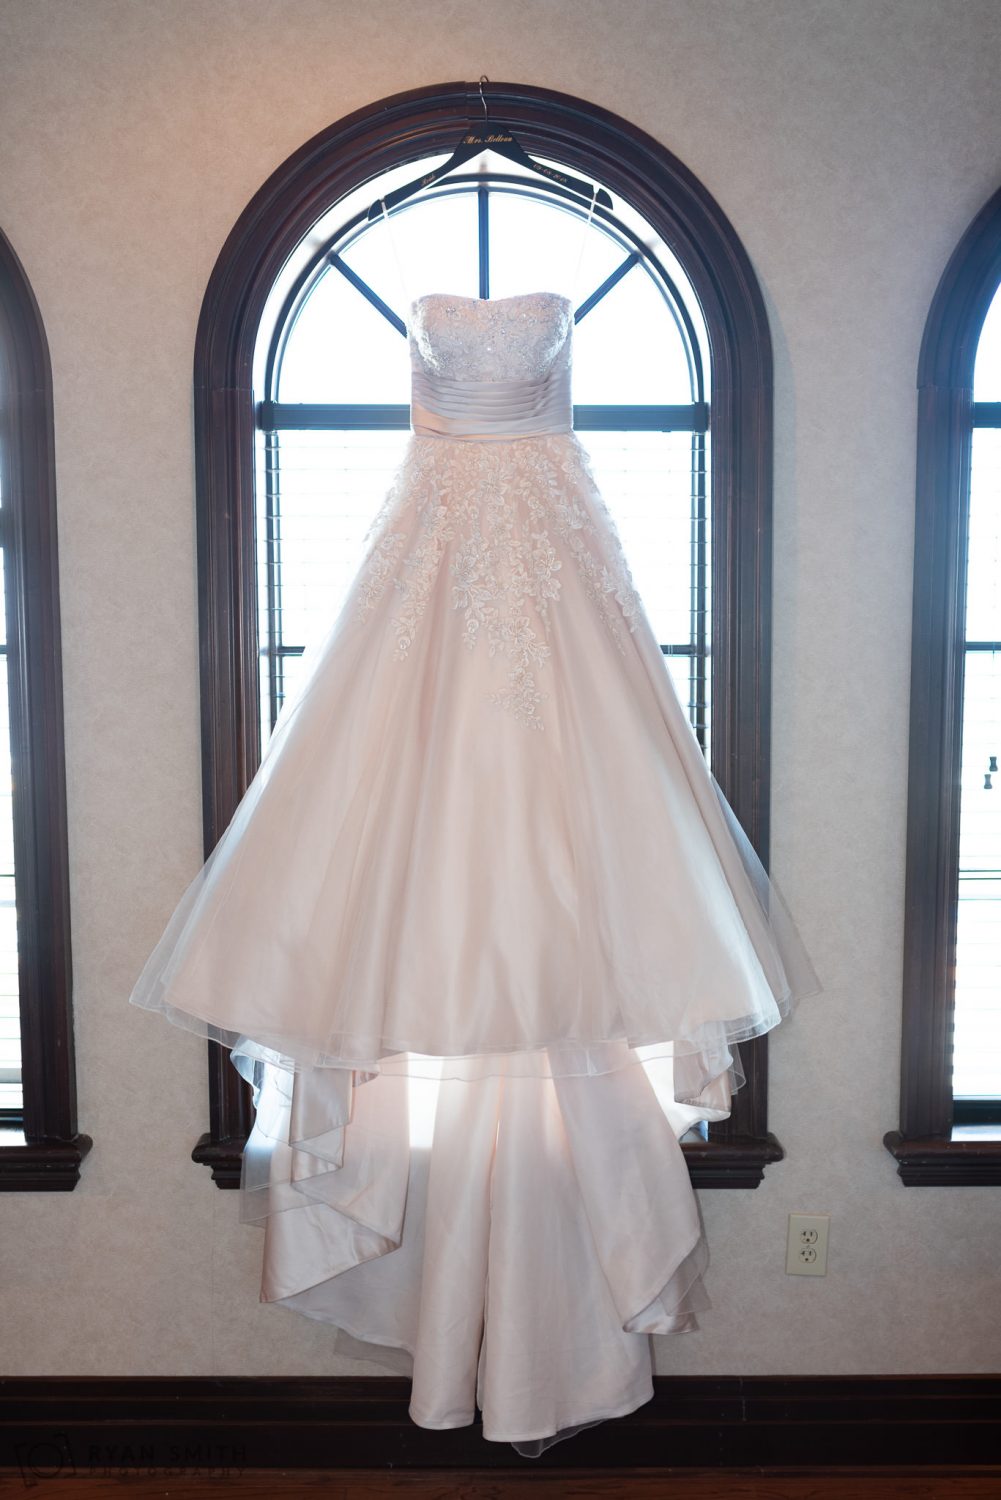 Bride's dress hanging in the window Grande Dunes Ocean Club